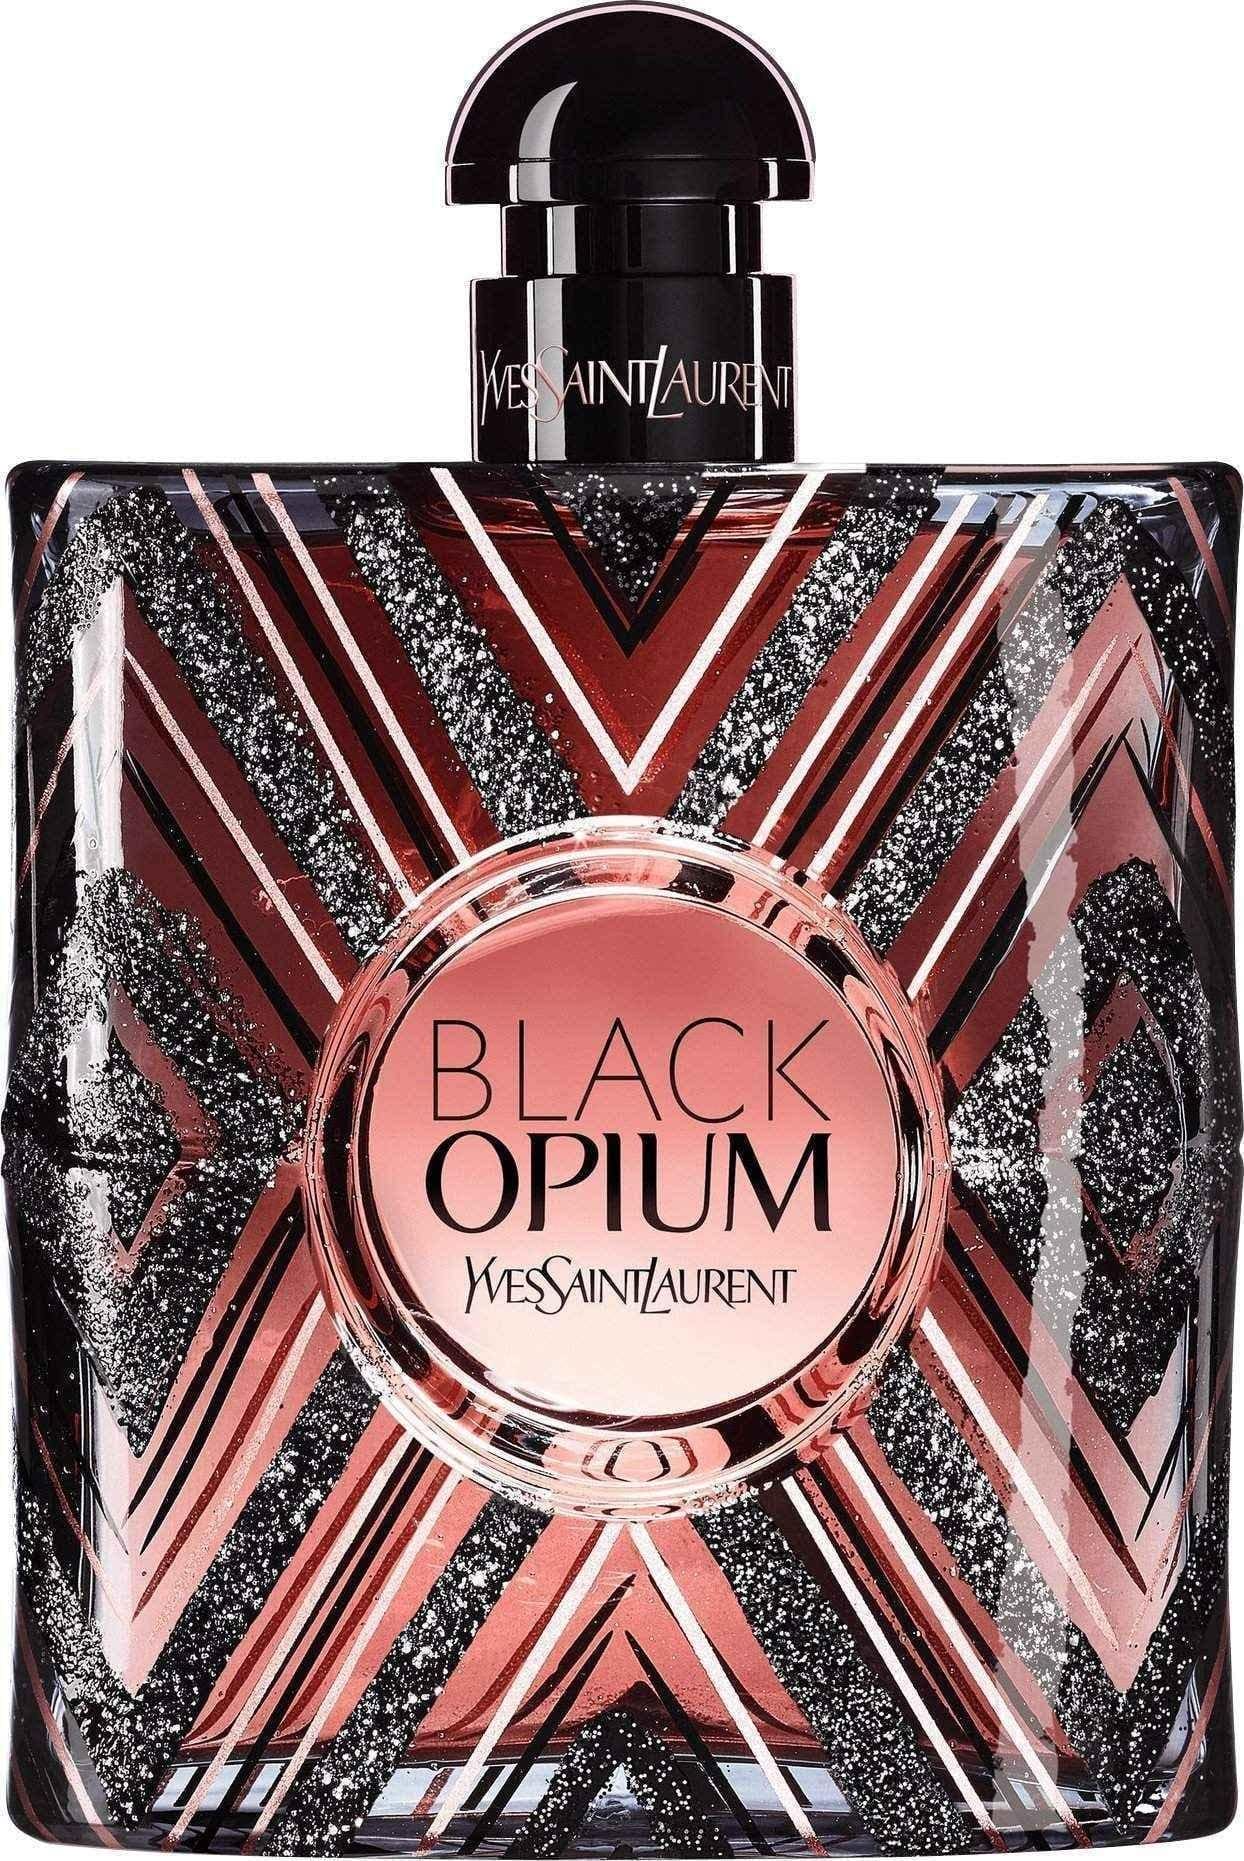 Yves Saint Laurent Black Opium Pure Illusion Eau de Parfum 50ml Spray - Limited Edition UK